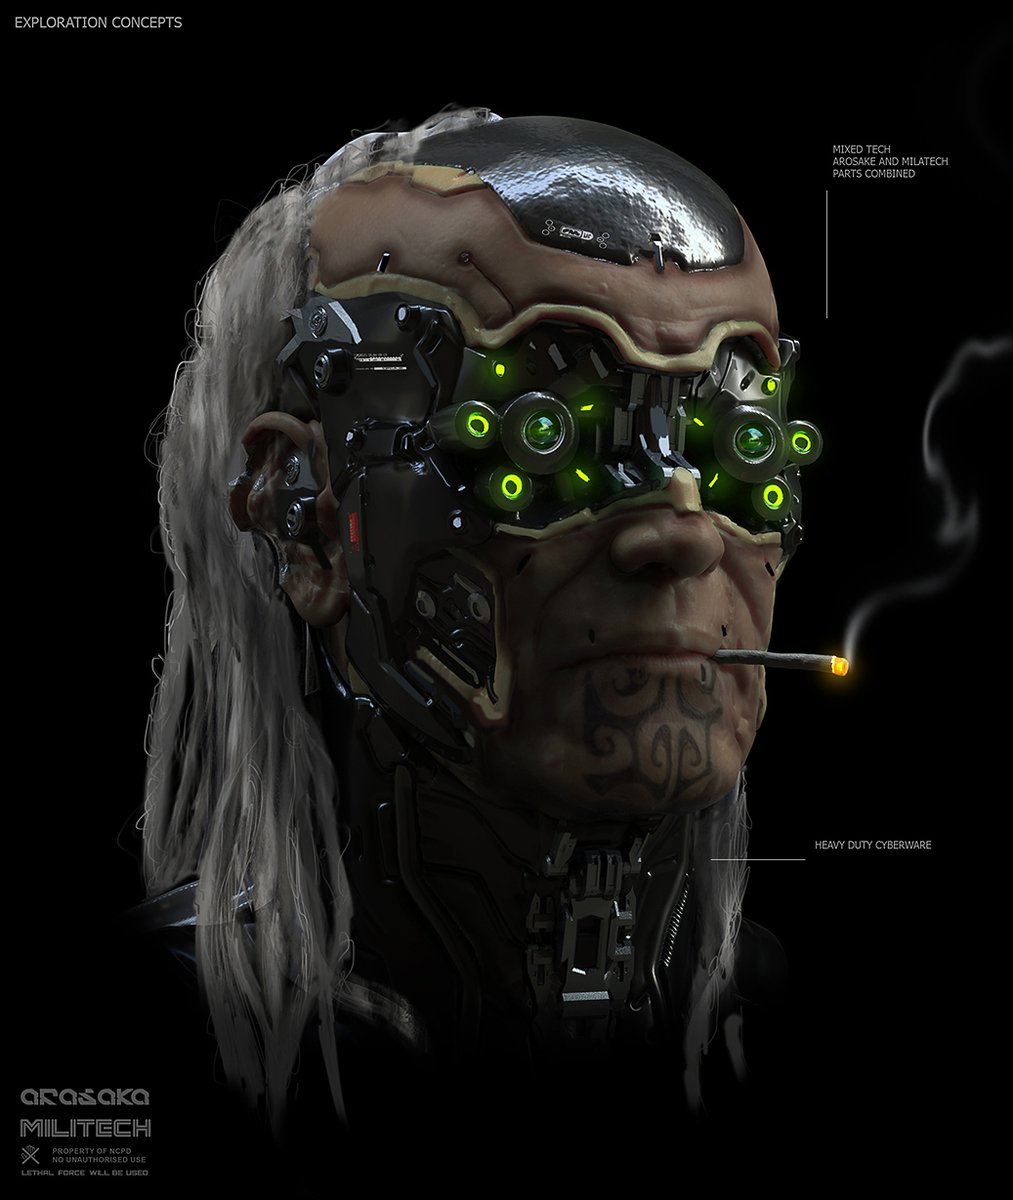 RT @furiotedeschi: Cyberpunk 2077 MERC concepts 
#Cyberpunk2077 https://t.co/dJeEsYOrNs